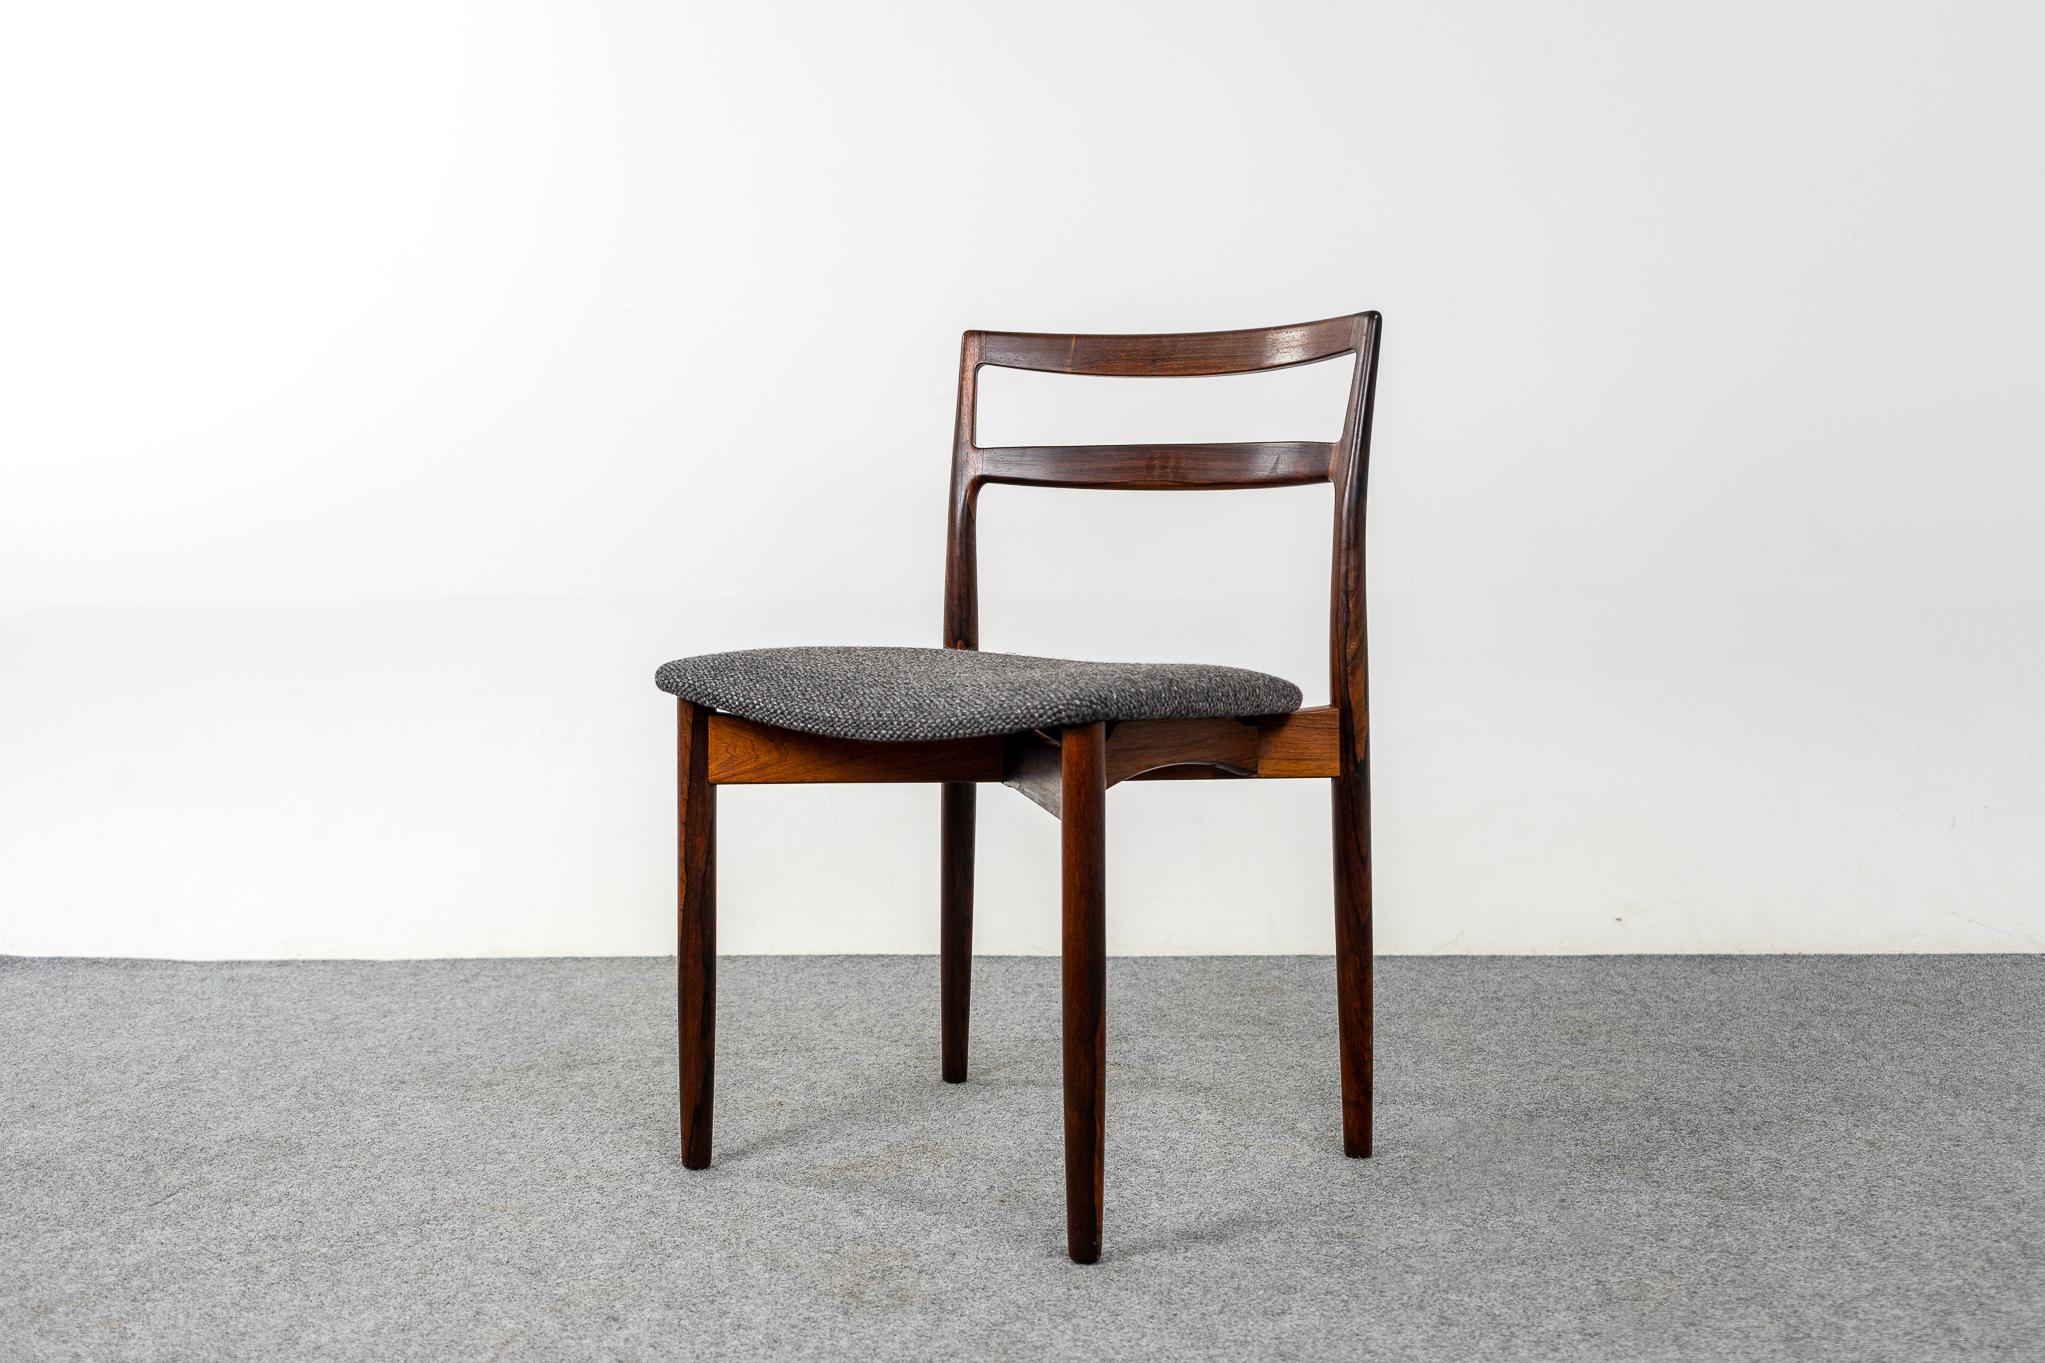 Satz von 4 dänischen Palisander-Esszimmerstühlen von Harry Ostergaard für Randers Mobelfabrik, um 1960. Wunderschön geschwungene Rückenlehnen und eine großzügige Sitzfläche bieten Halt und Komfort. Der schwebende Sitz verleiht dem Gestell einen